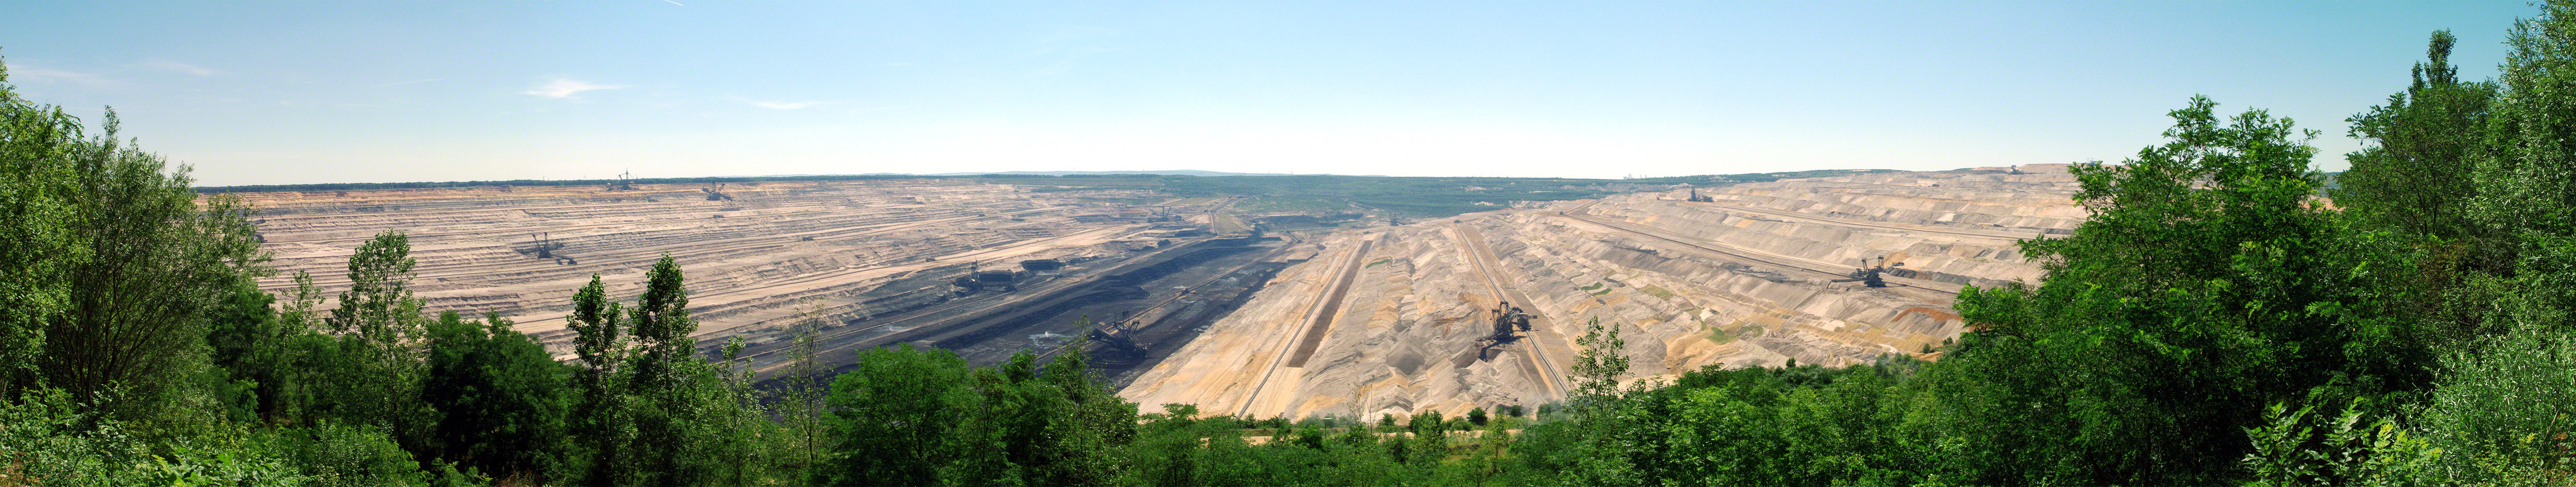 Hambach lignite mine